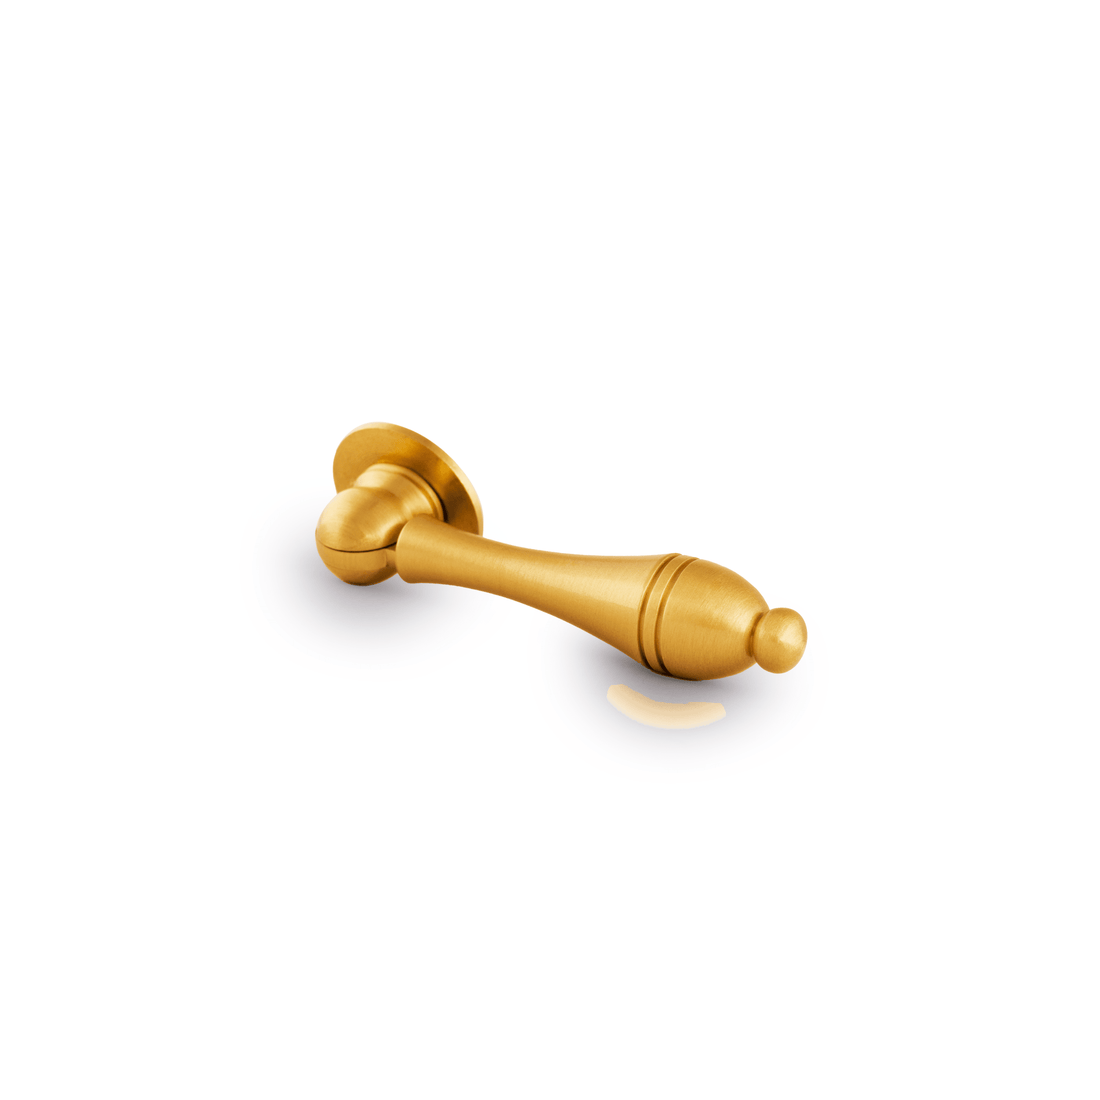 MANTARA-B-0041 Knob Knob 65mm / Gold / Brass - M A N T A R A